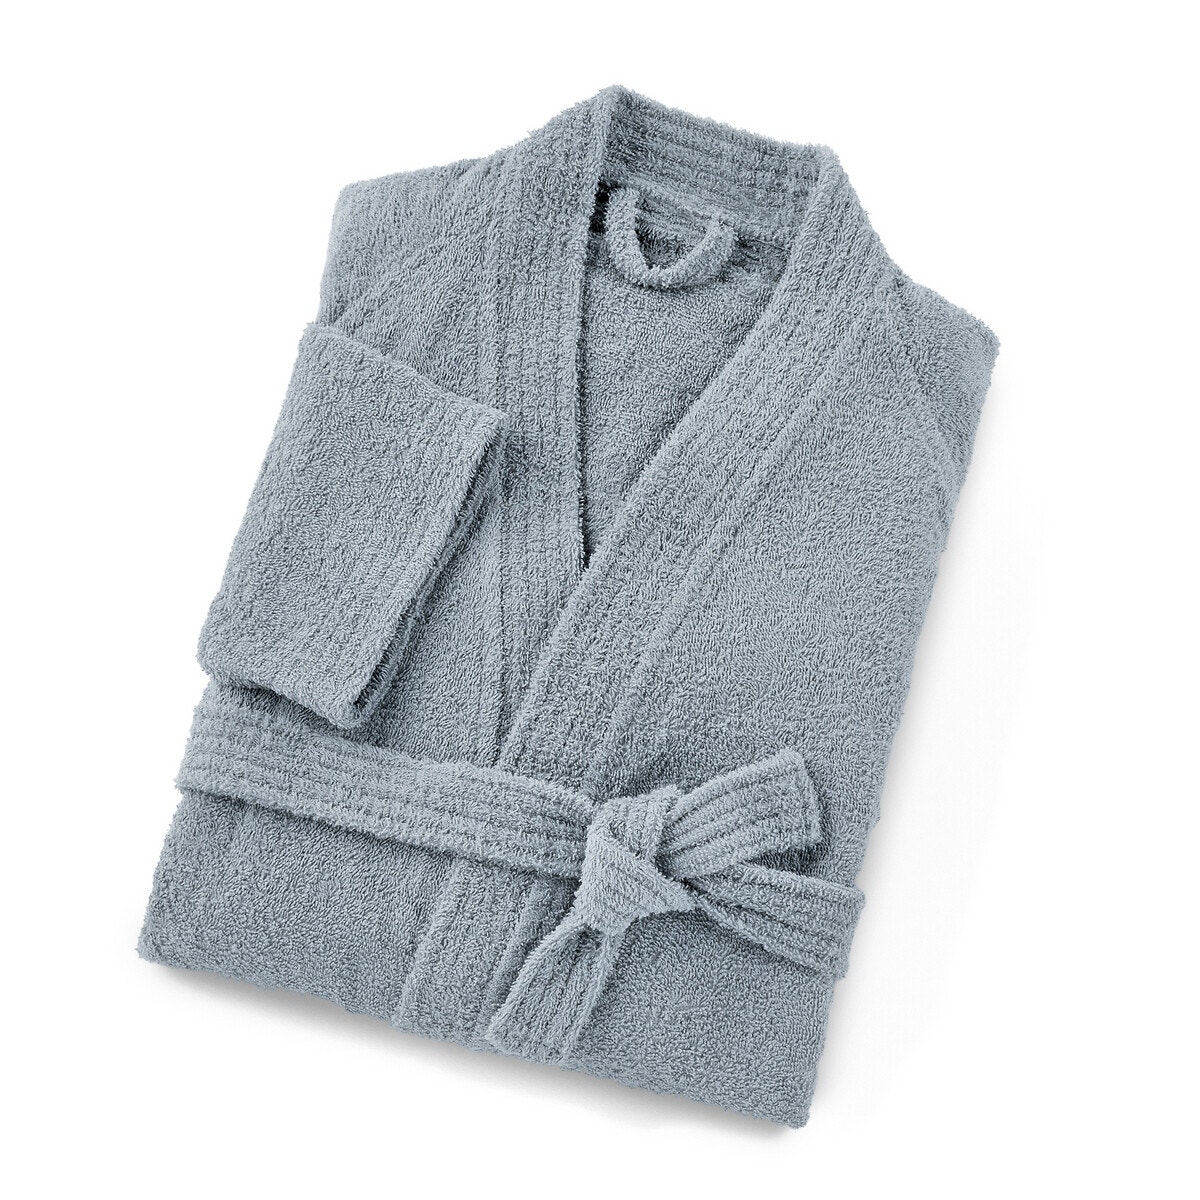 Cotton Kimono-style Bathrobe, 350 g m² 170010159_1571